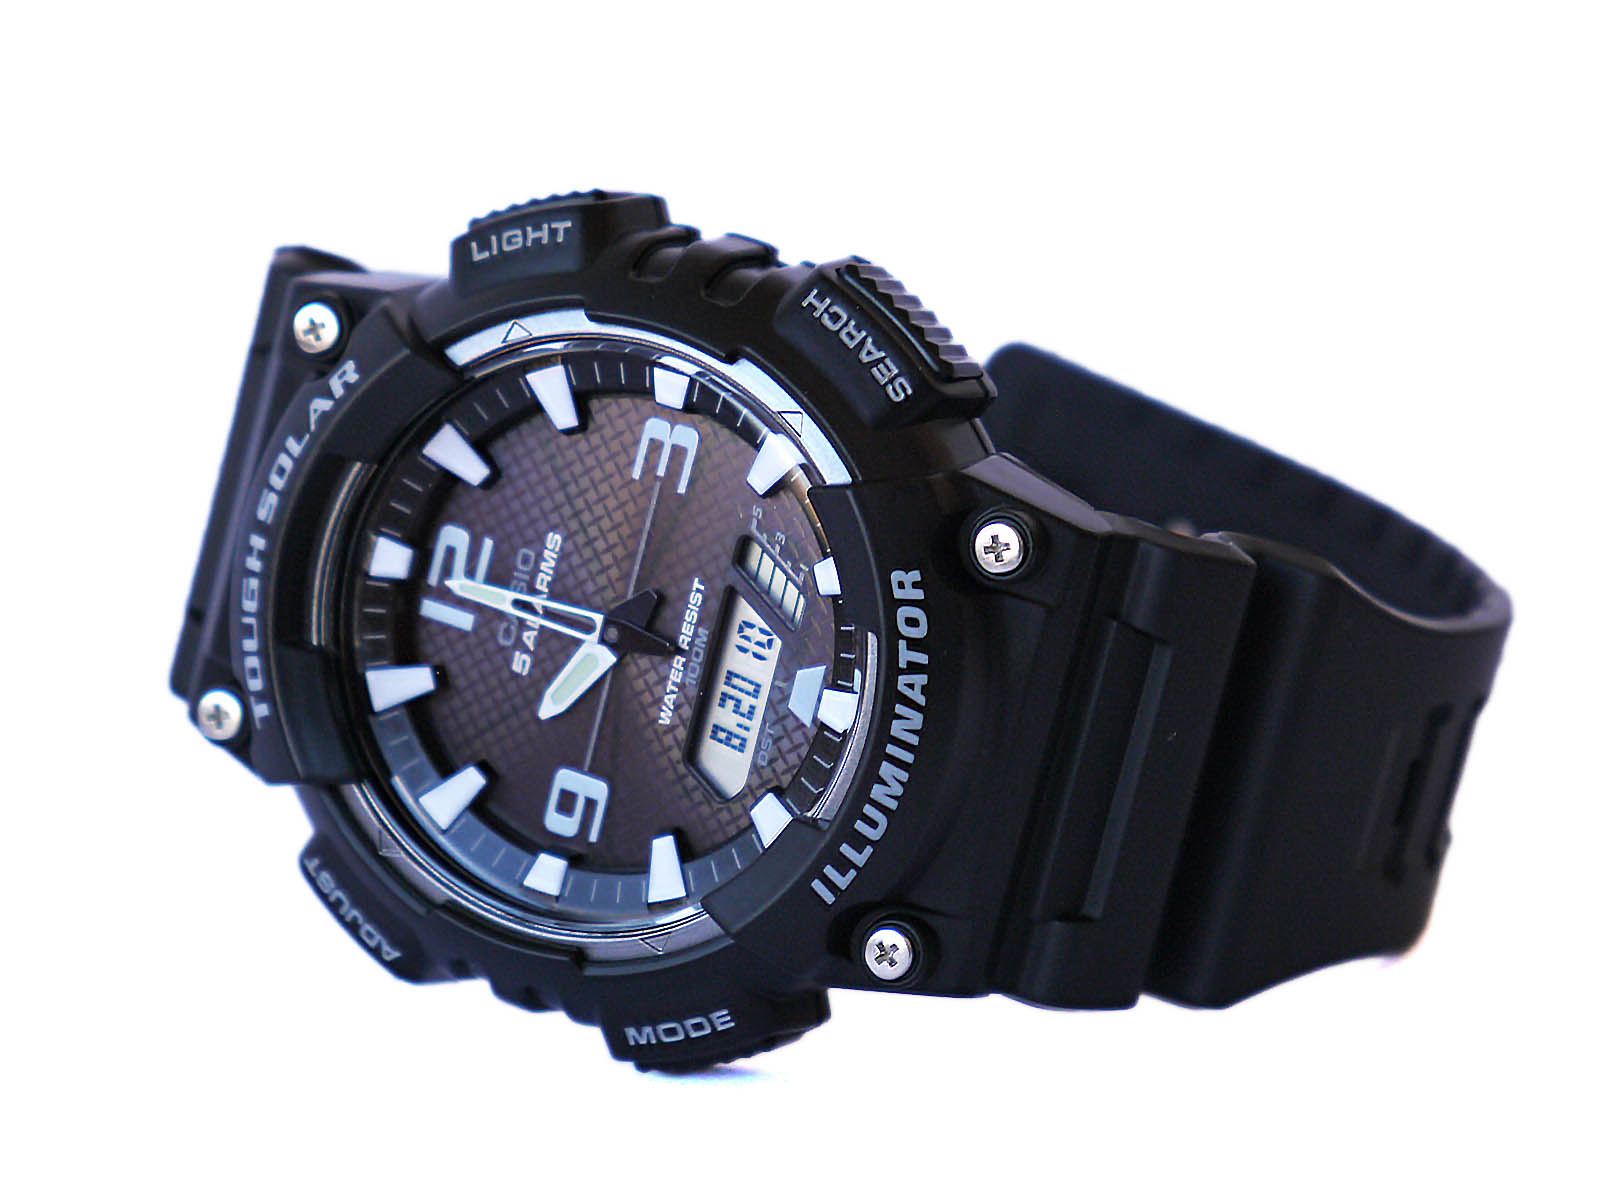 Casio-AQ-S810-1AV Tough Solar Watch Quality Digi-Analog ⋆ Gallery High Watch